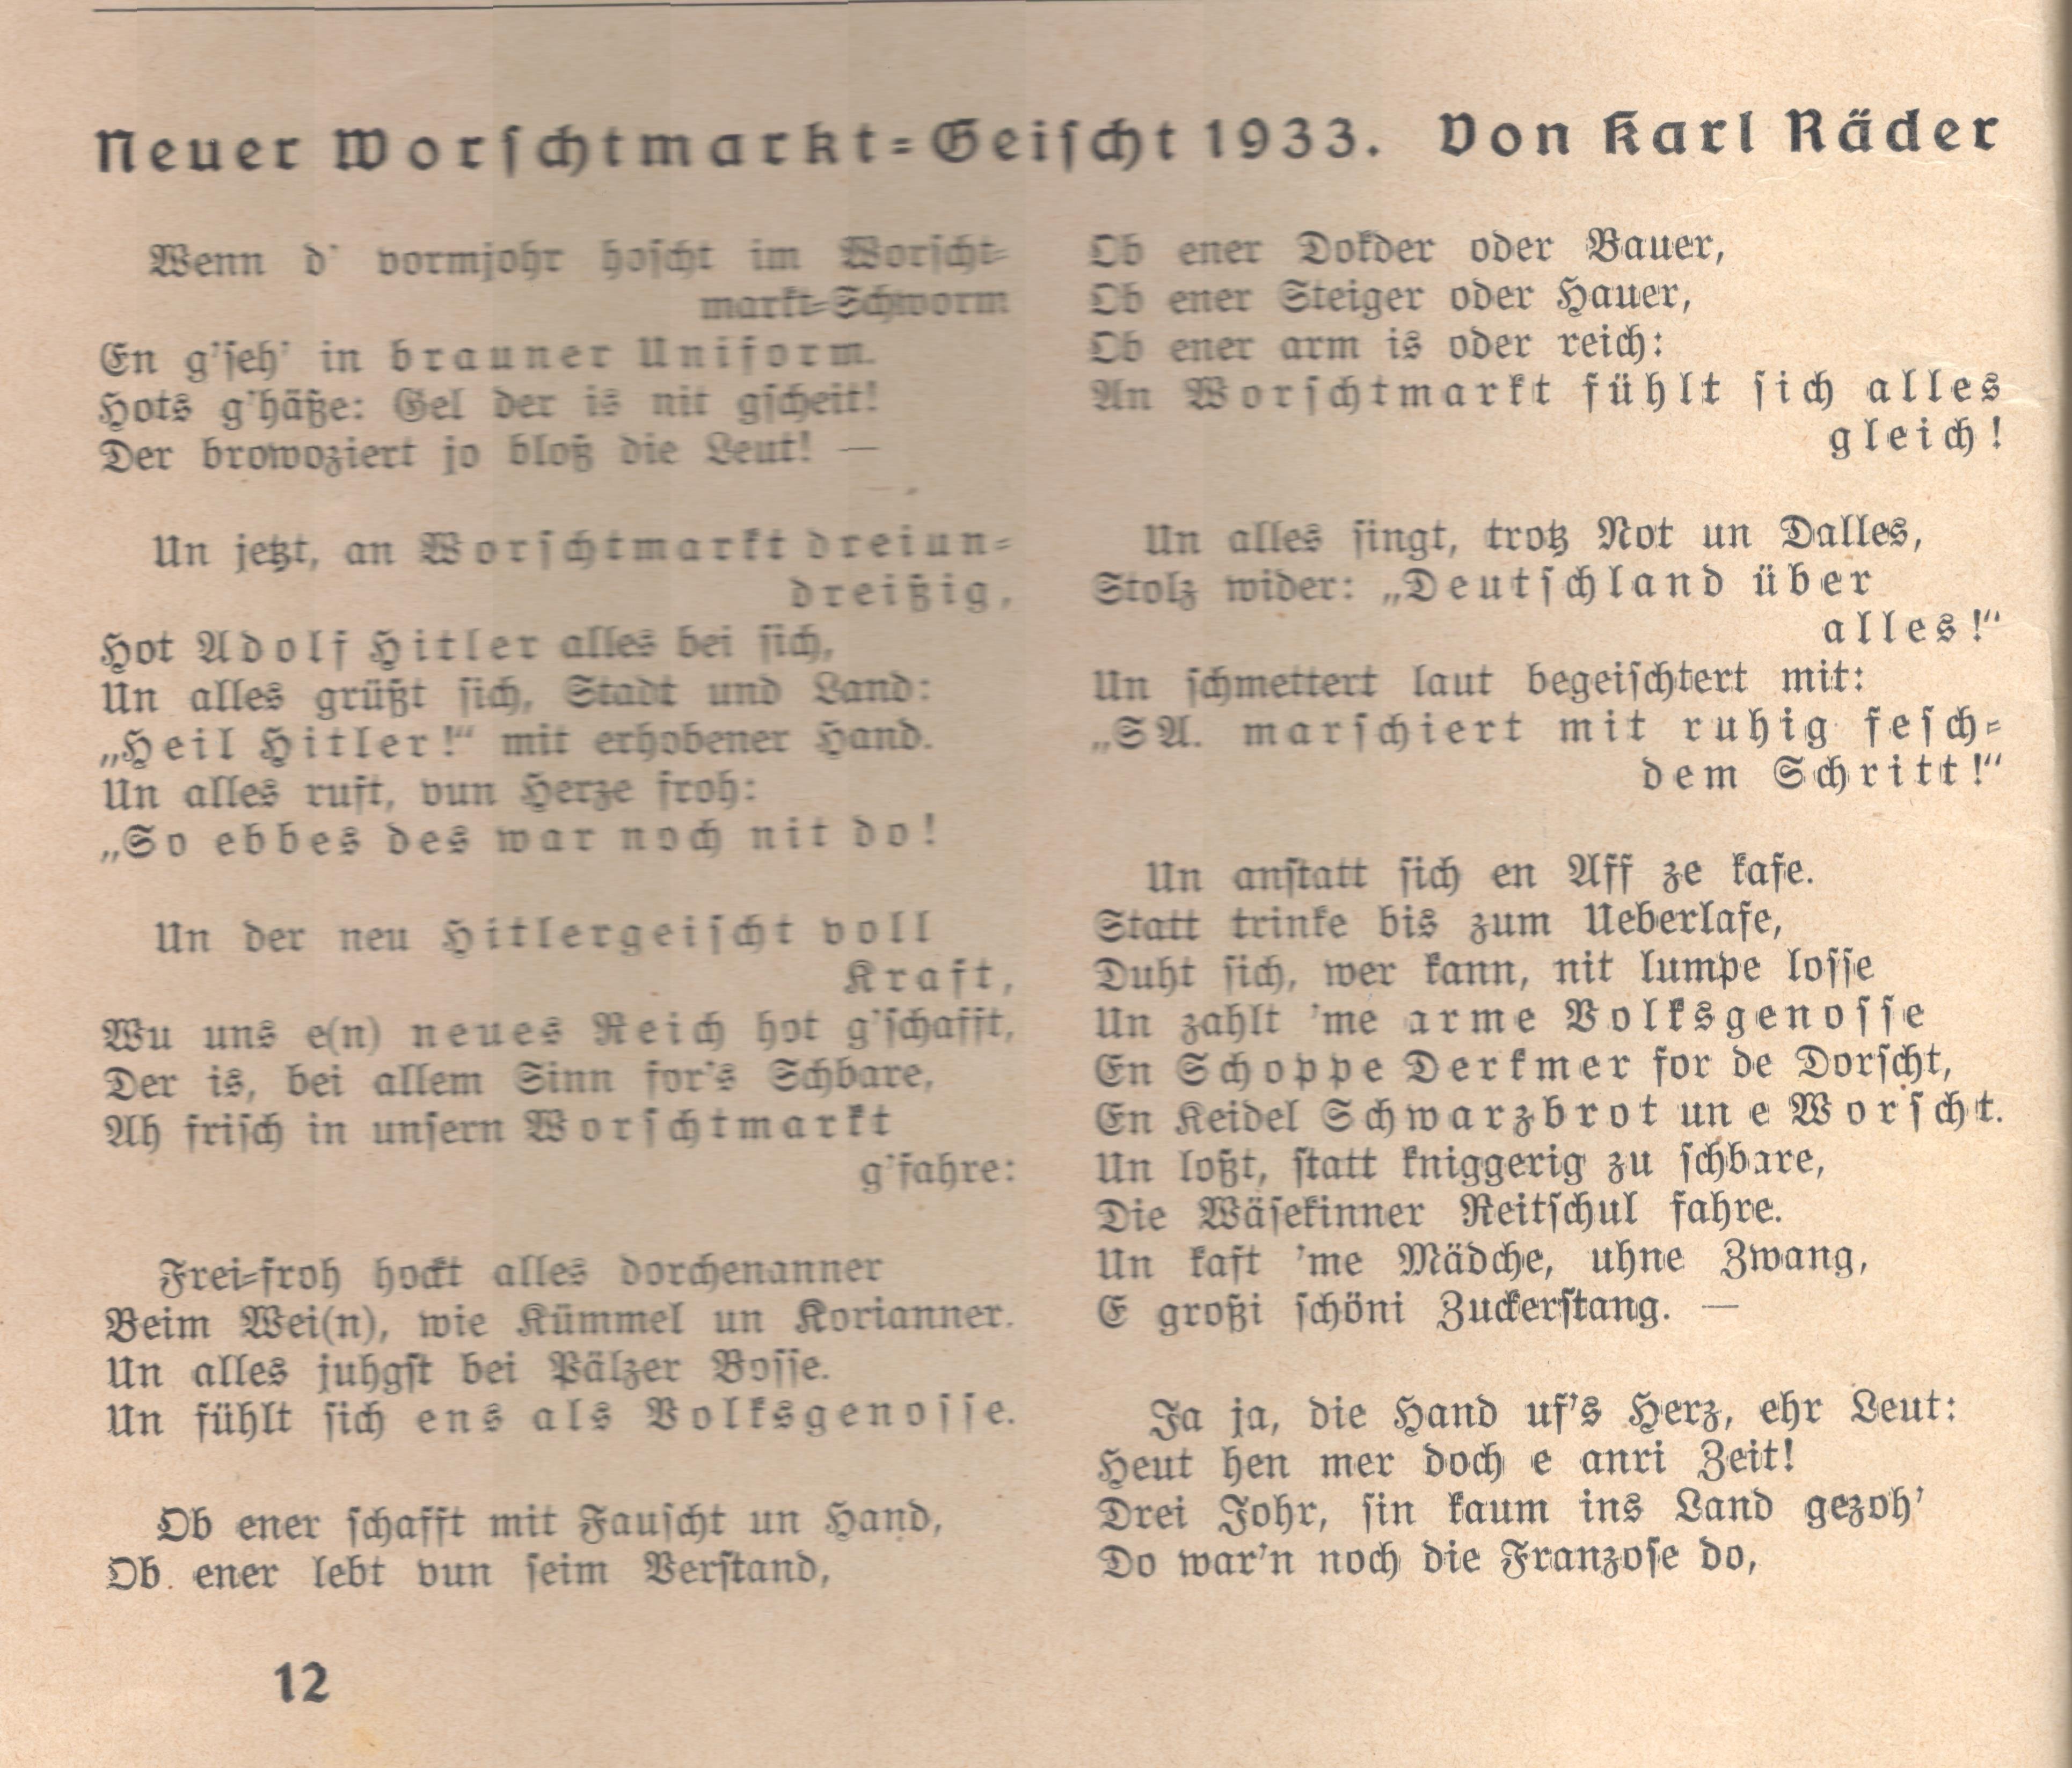 Gedicht Worschtmart 1933 (Stadtmuseum Bad Dürkheim im Kulturzentrum Haus Catoir CC BY-NC-SA)